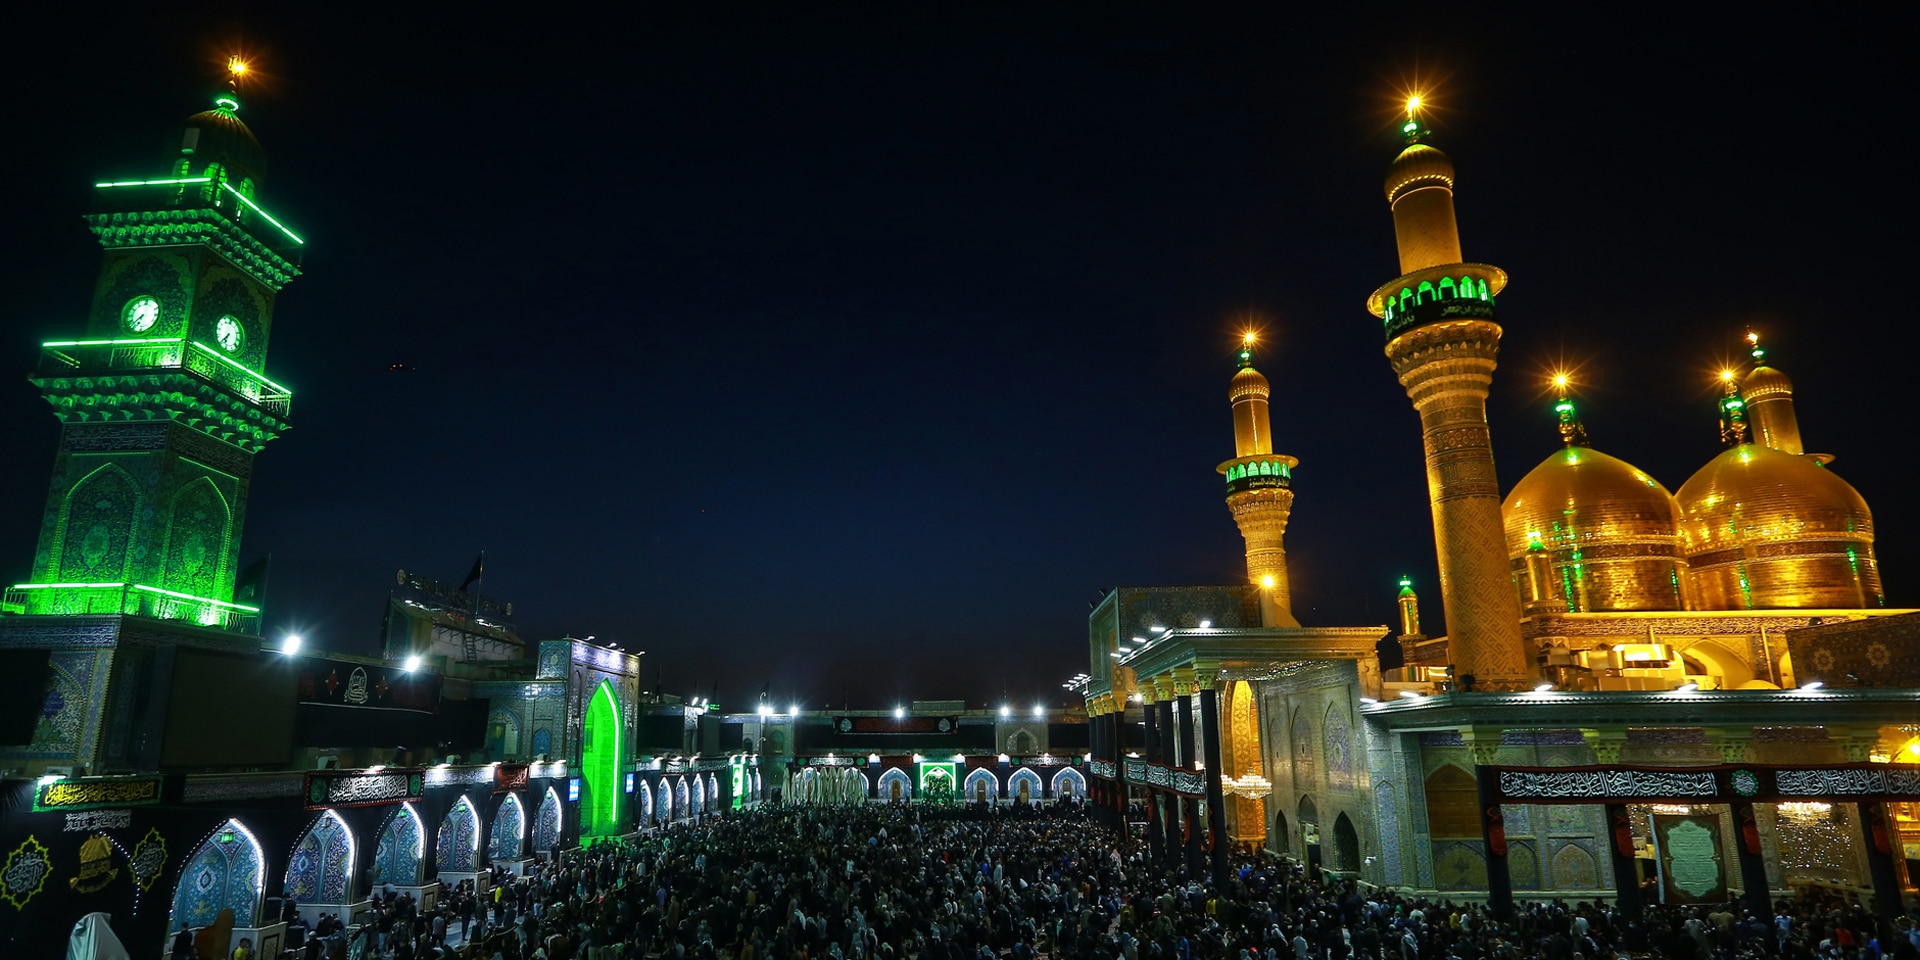 Vue nocturne d’une mosquée illuminée à Bagdad, la capitale irakienne.